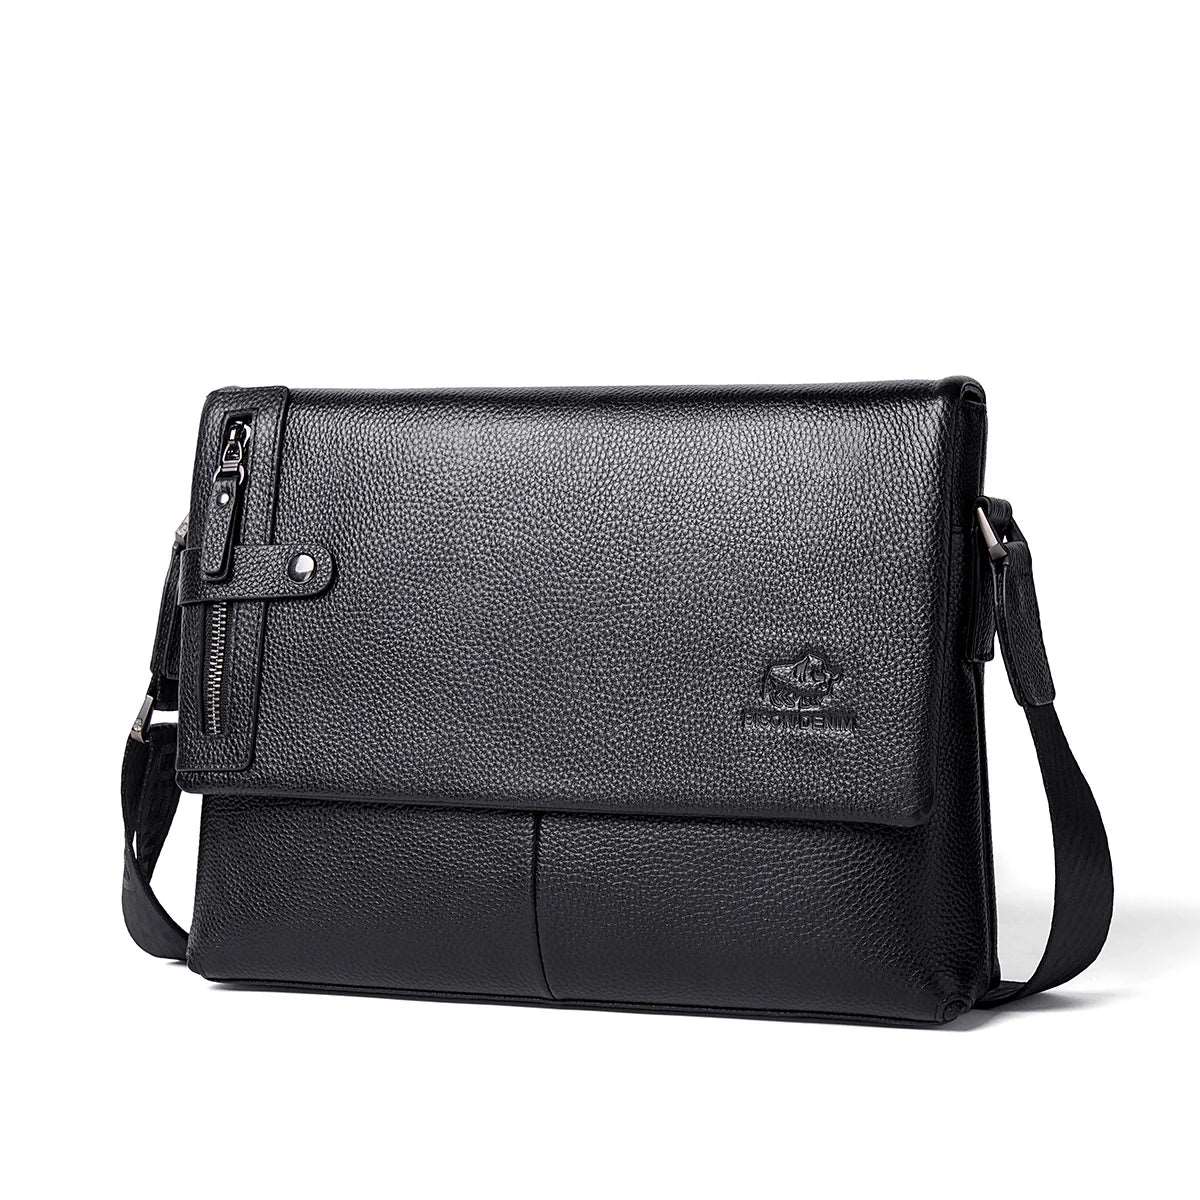 BISON DENIM Genuine Leather Shoulder Business Messenger bag Horizontal